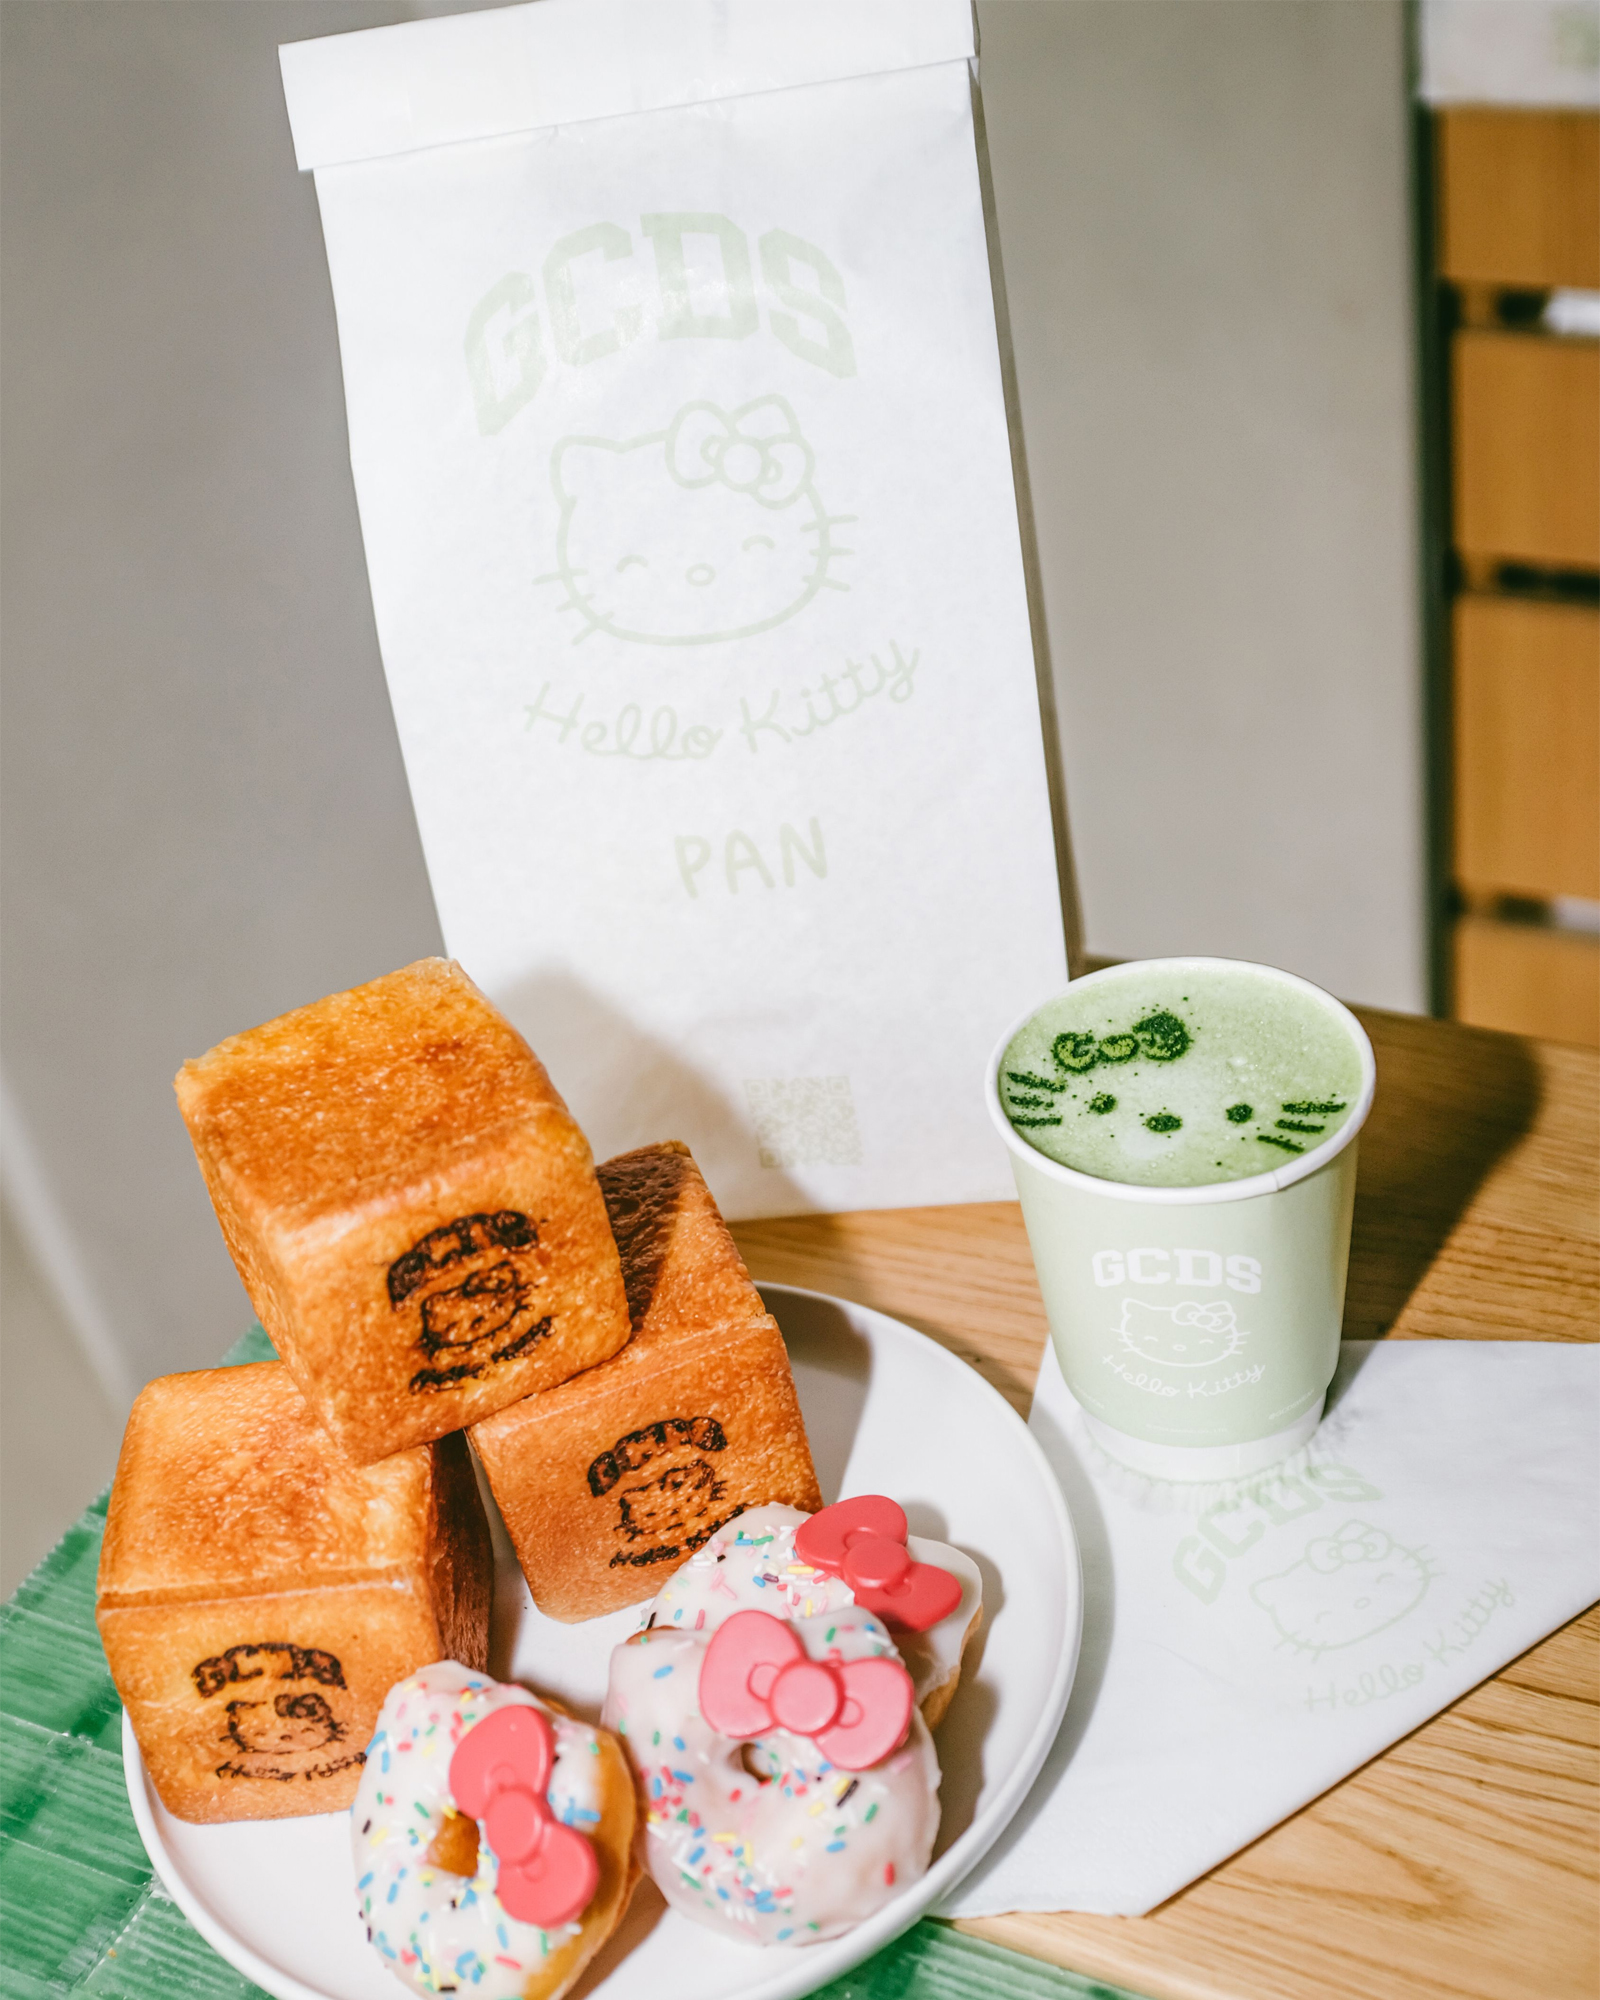 GCDS Hello Kitty Bakery Pan Milano Donut Shokupan viennoiserie